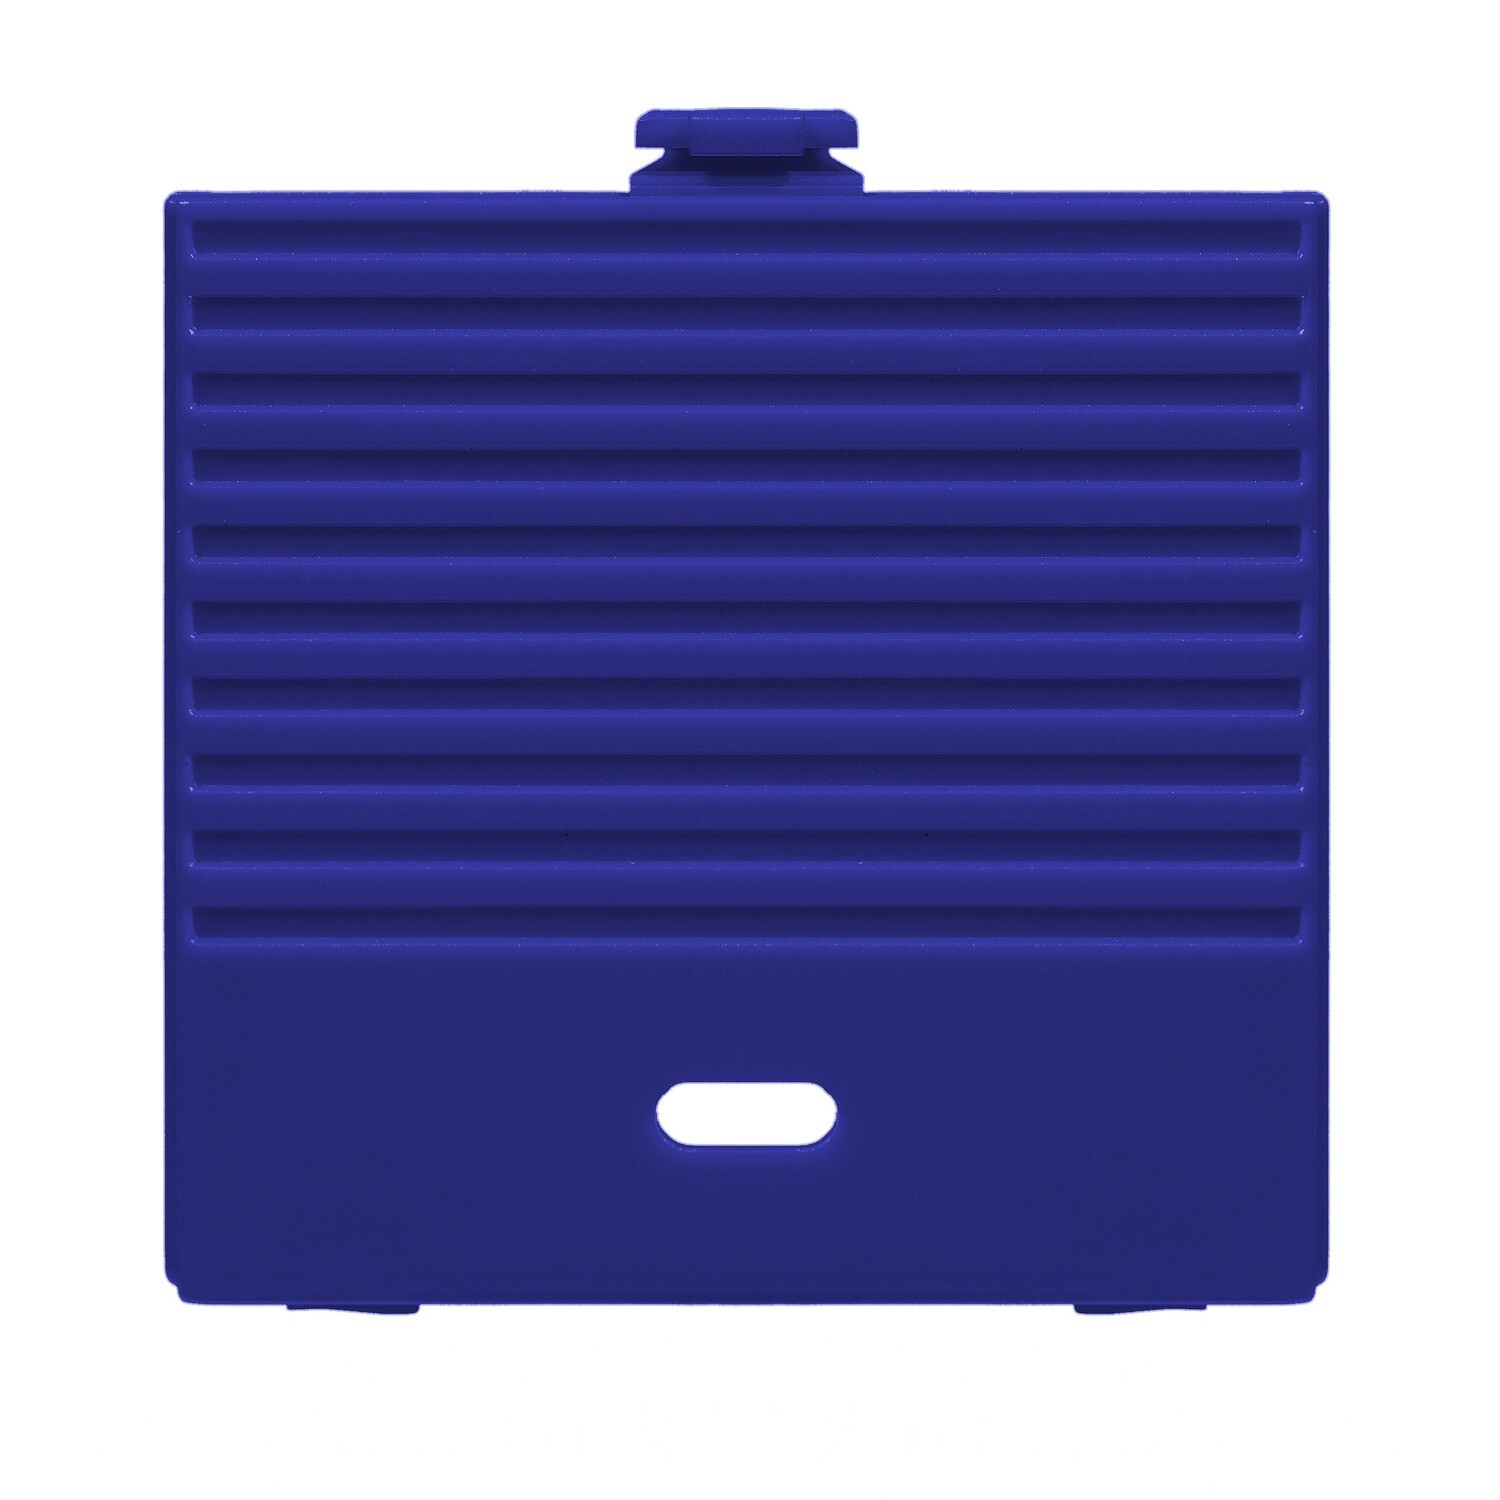 Game Boy Original USB-C Battery Cover (Blue)